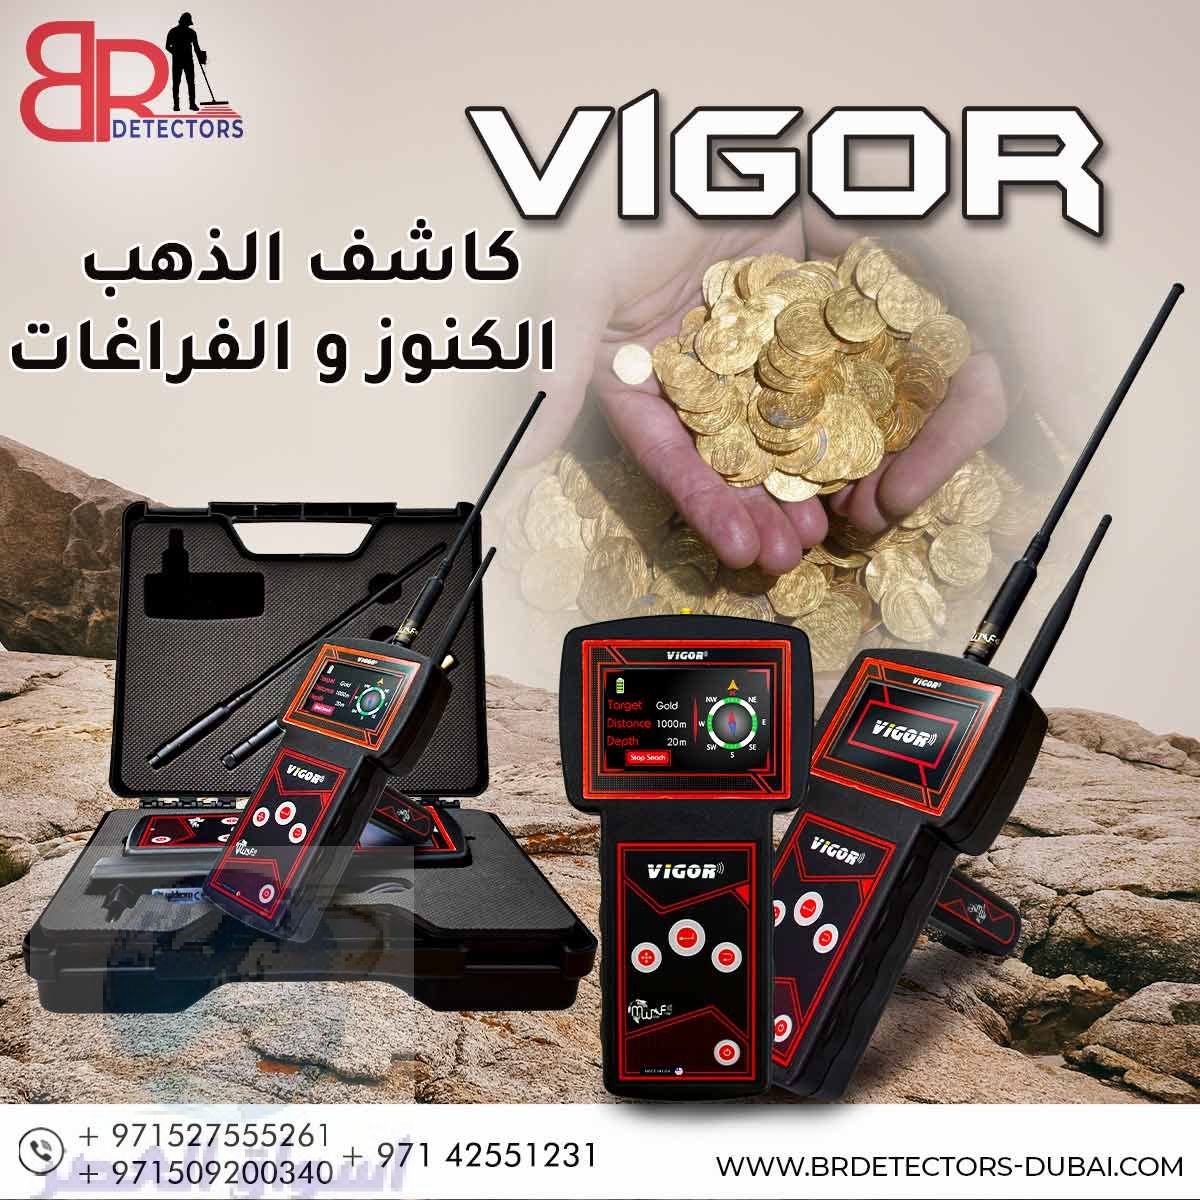 اجهزة كشف الذهب في الامارات – فيغور Vigor